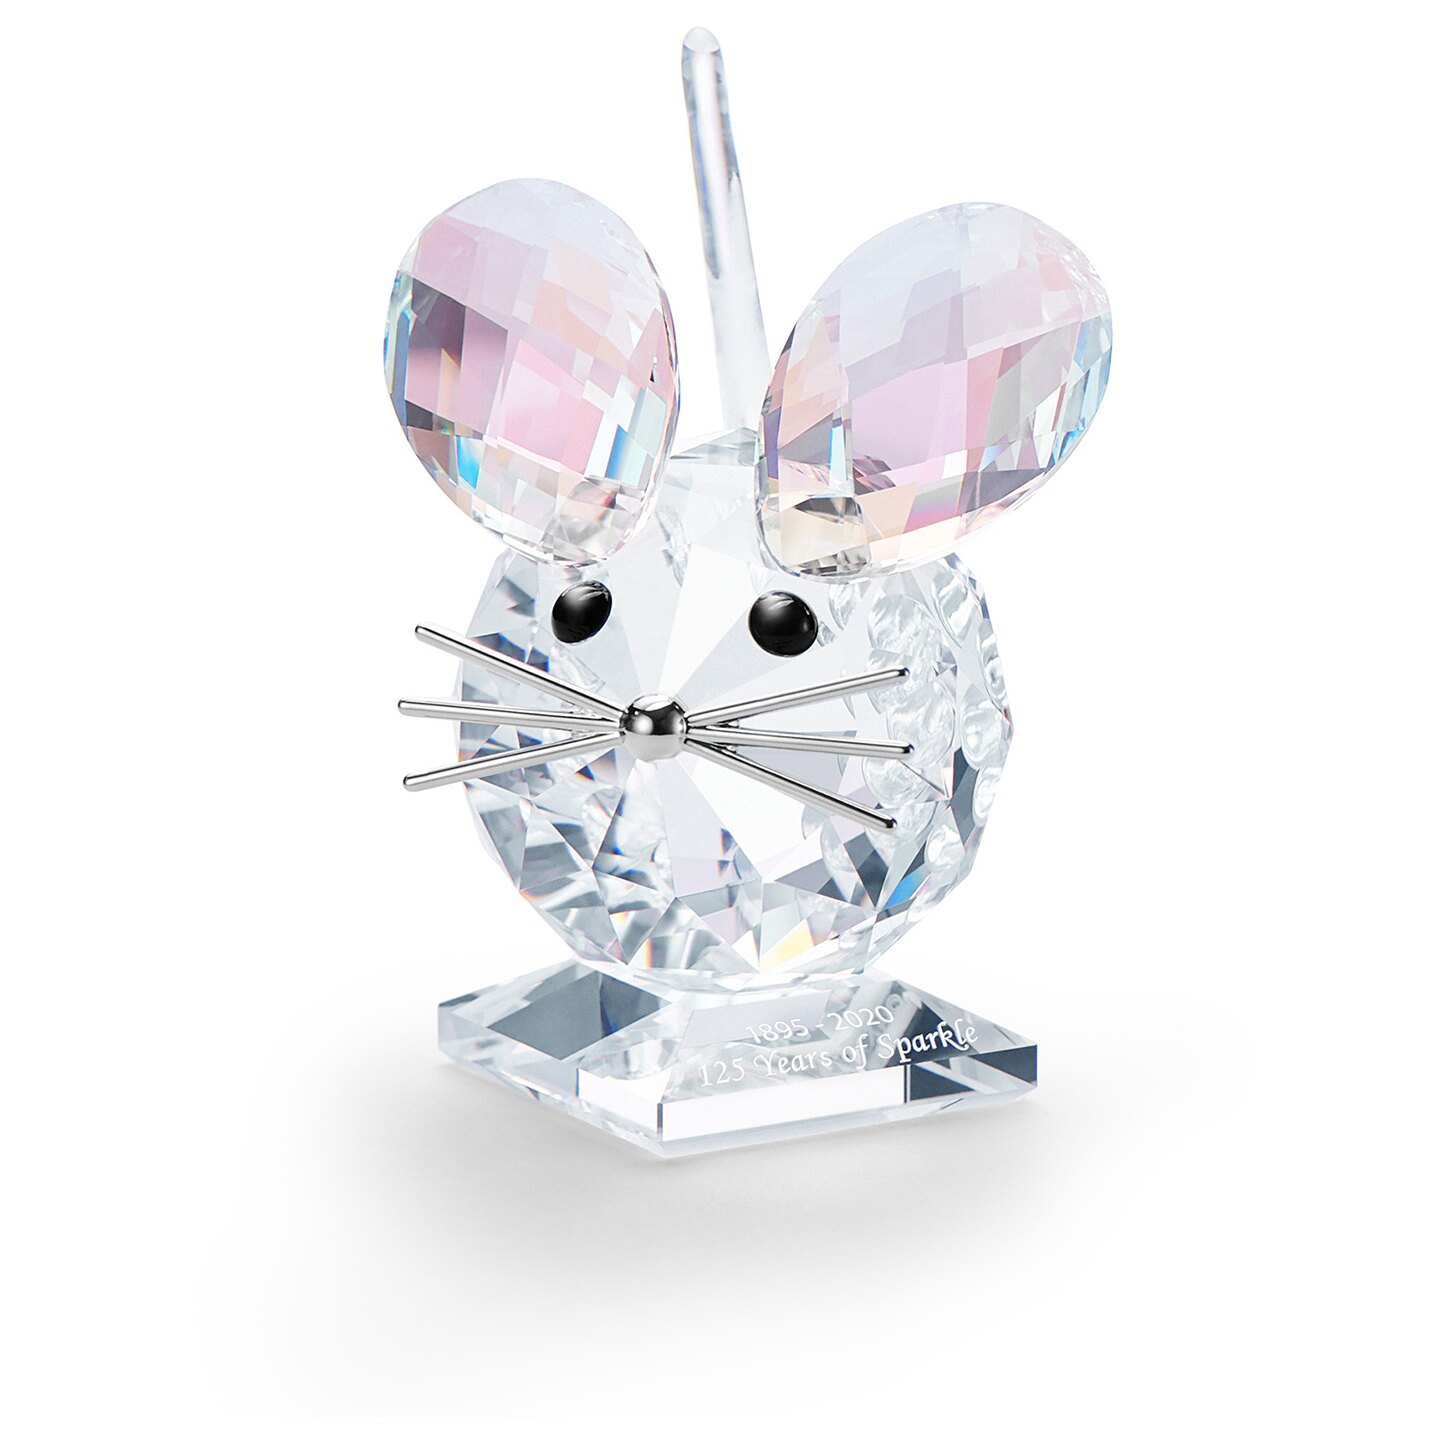 Swarovski Anniversary Mouse - Annual Edition 2020